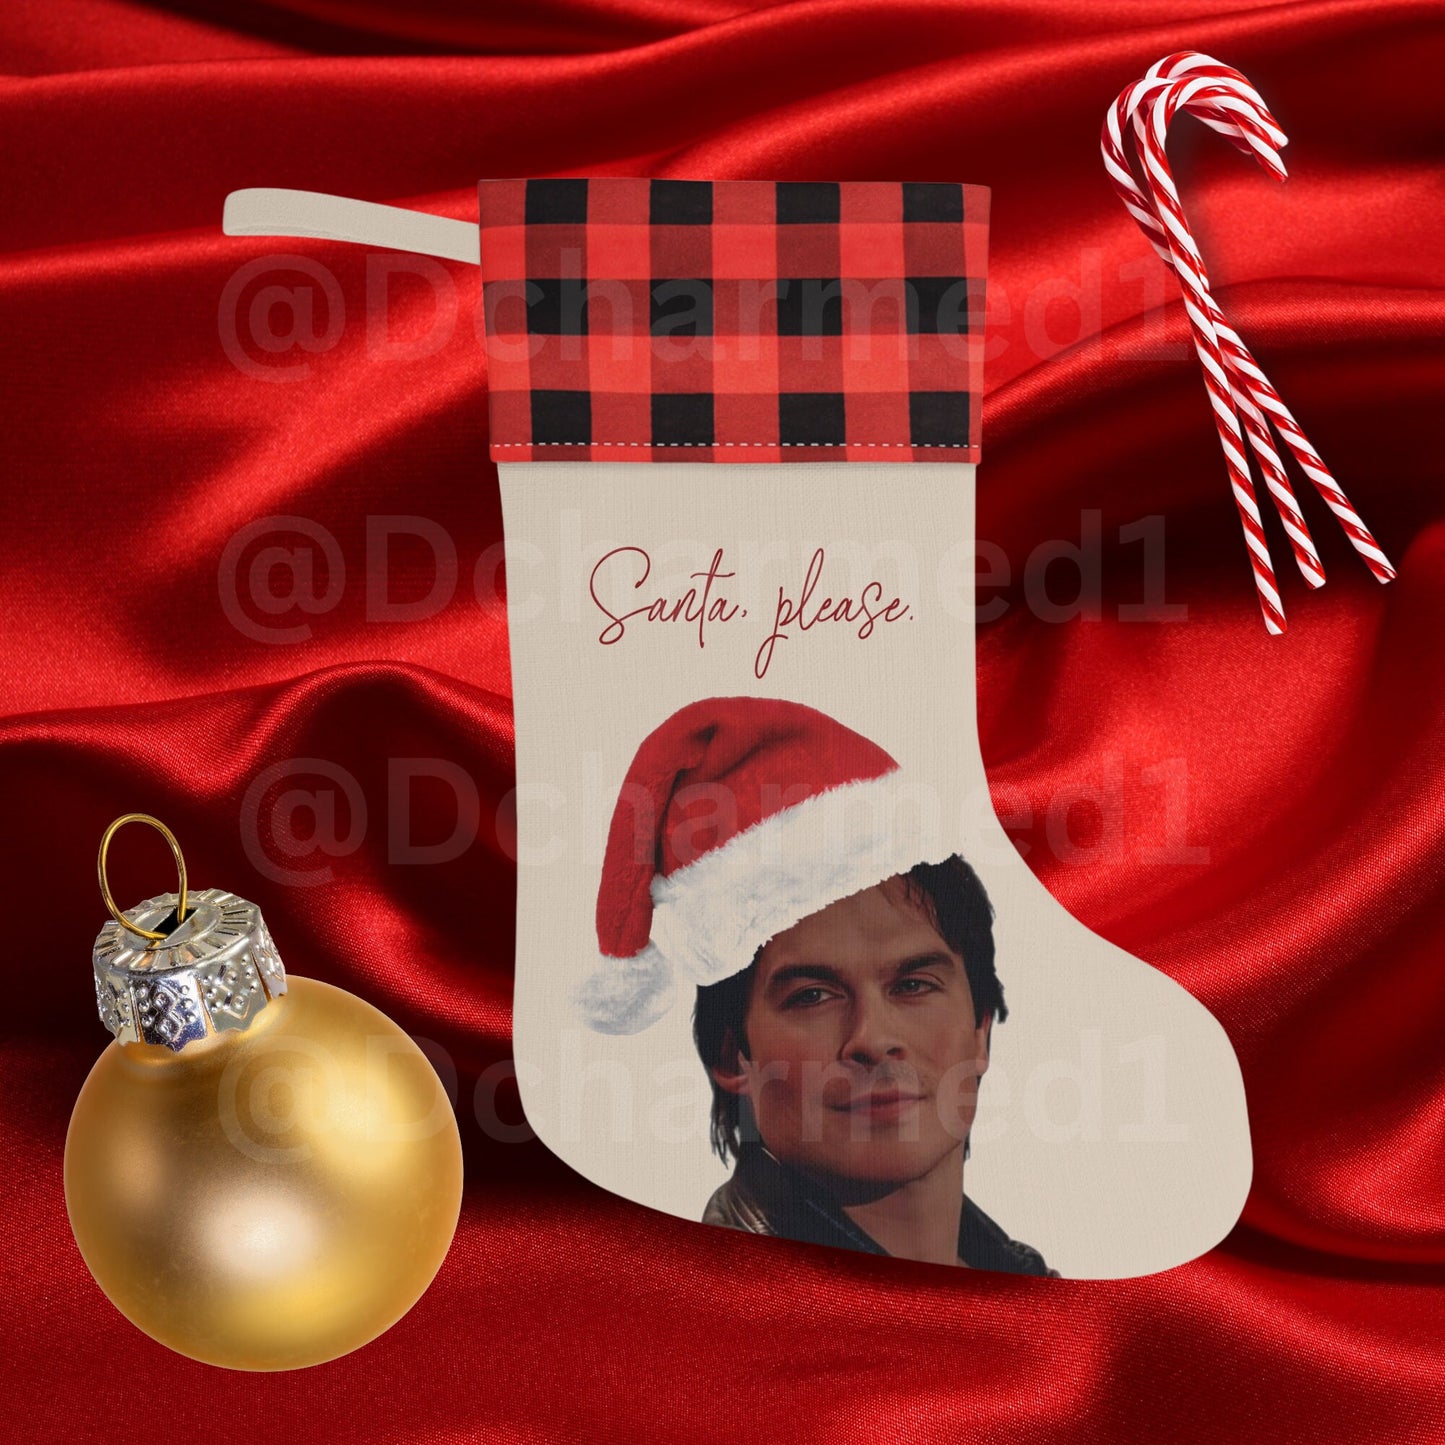 TVD xmas stocking, Damon Salvatore stocking, Damon Salvatore xmas gift, tvd merch, tvd fan gift, tvd xmas, Damon Salvatore merch